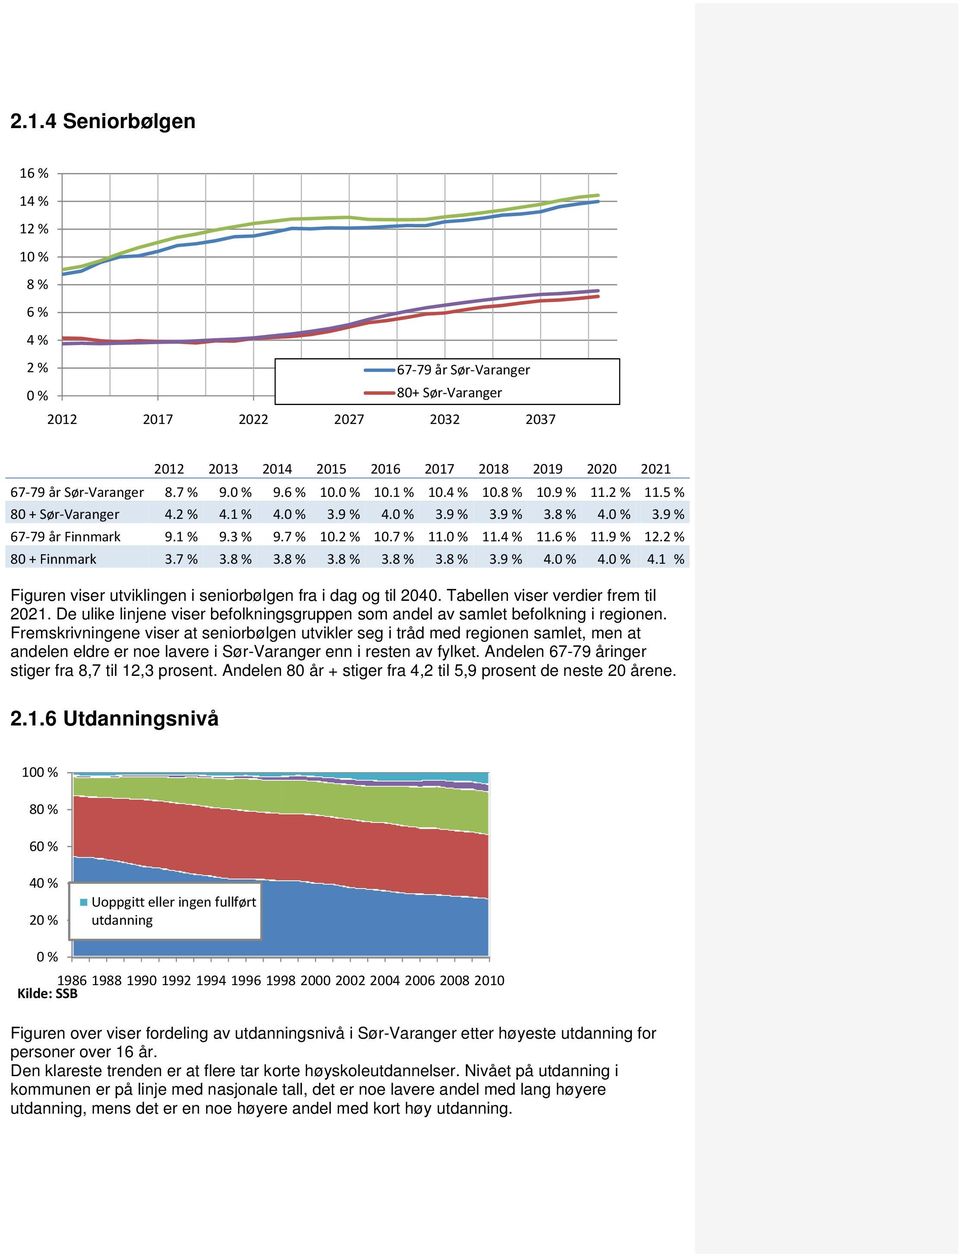 2 % 80 + Finnmark 3.7 % 3.8 % 3.8 % 3.8 % 3.8 % 3.8 % 3.9 % 4.0 % 4.0 % 4.1 % Figuren viser utviklingen i seniorbølgen fra i dag og til 2040. Tabellen viser verdier frem til 2021.